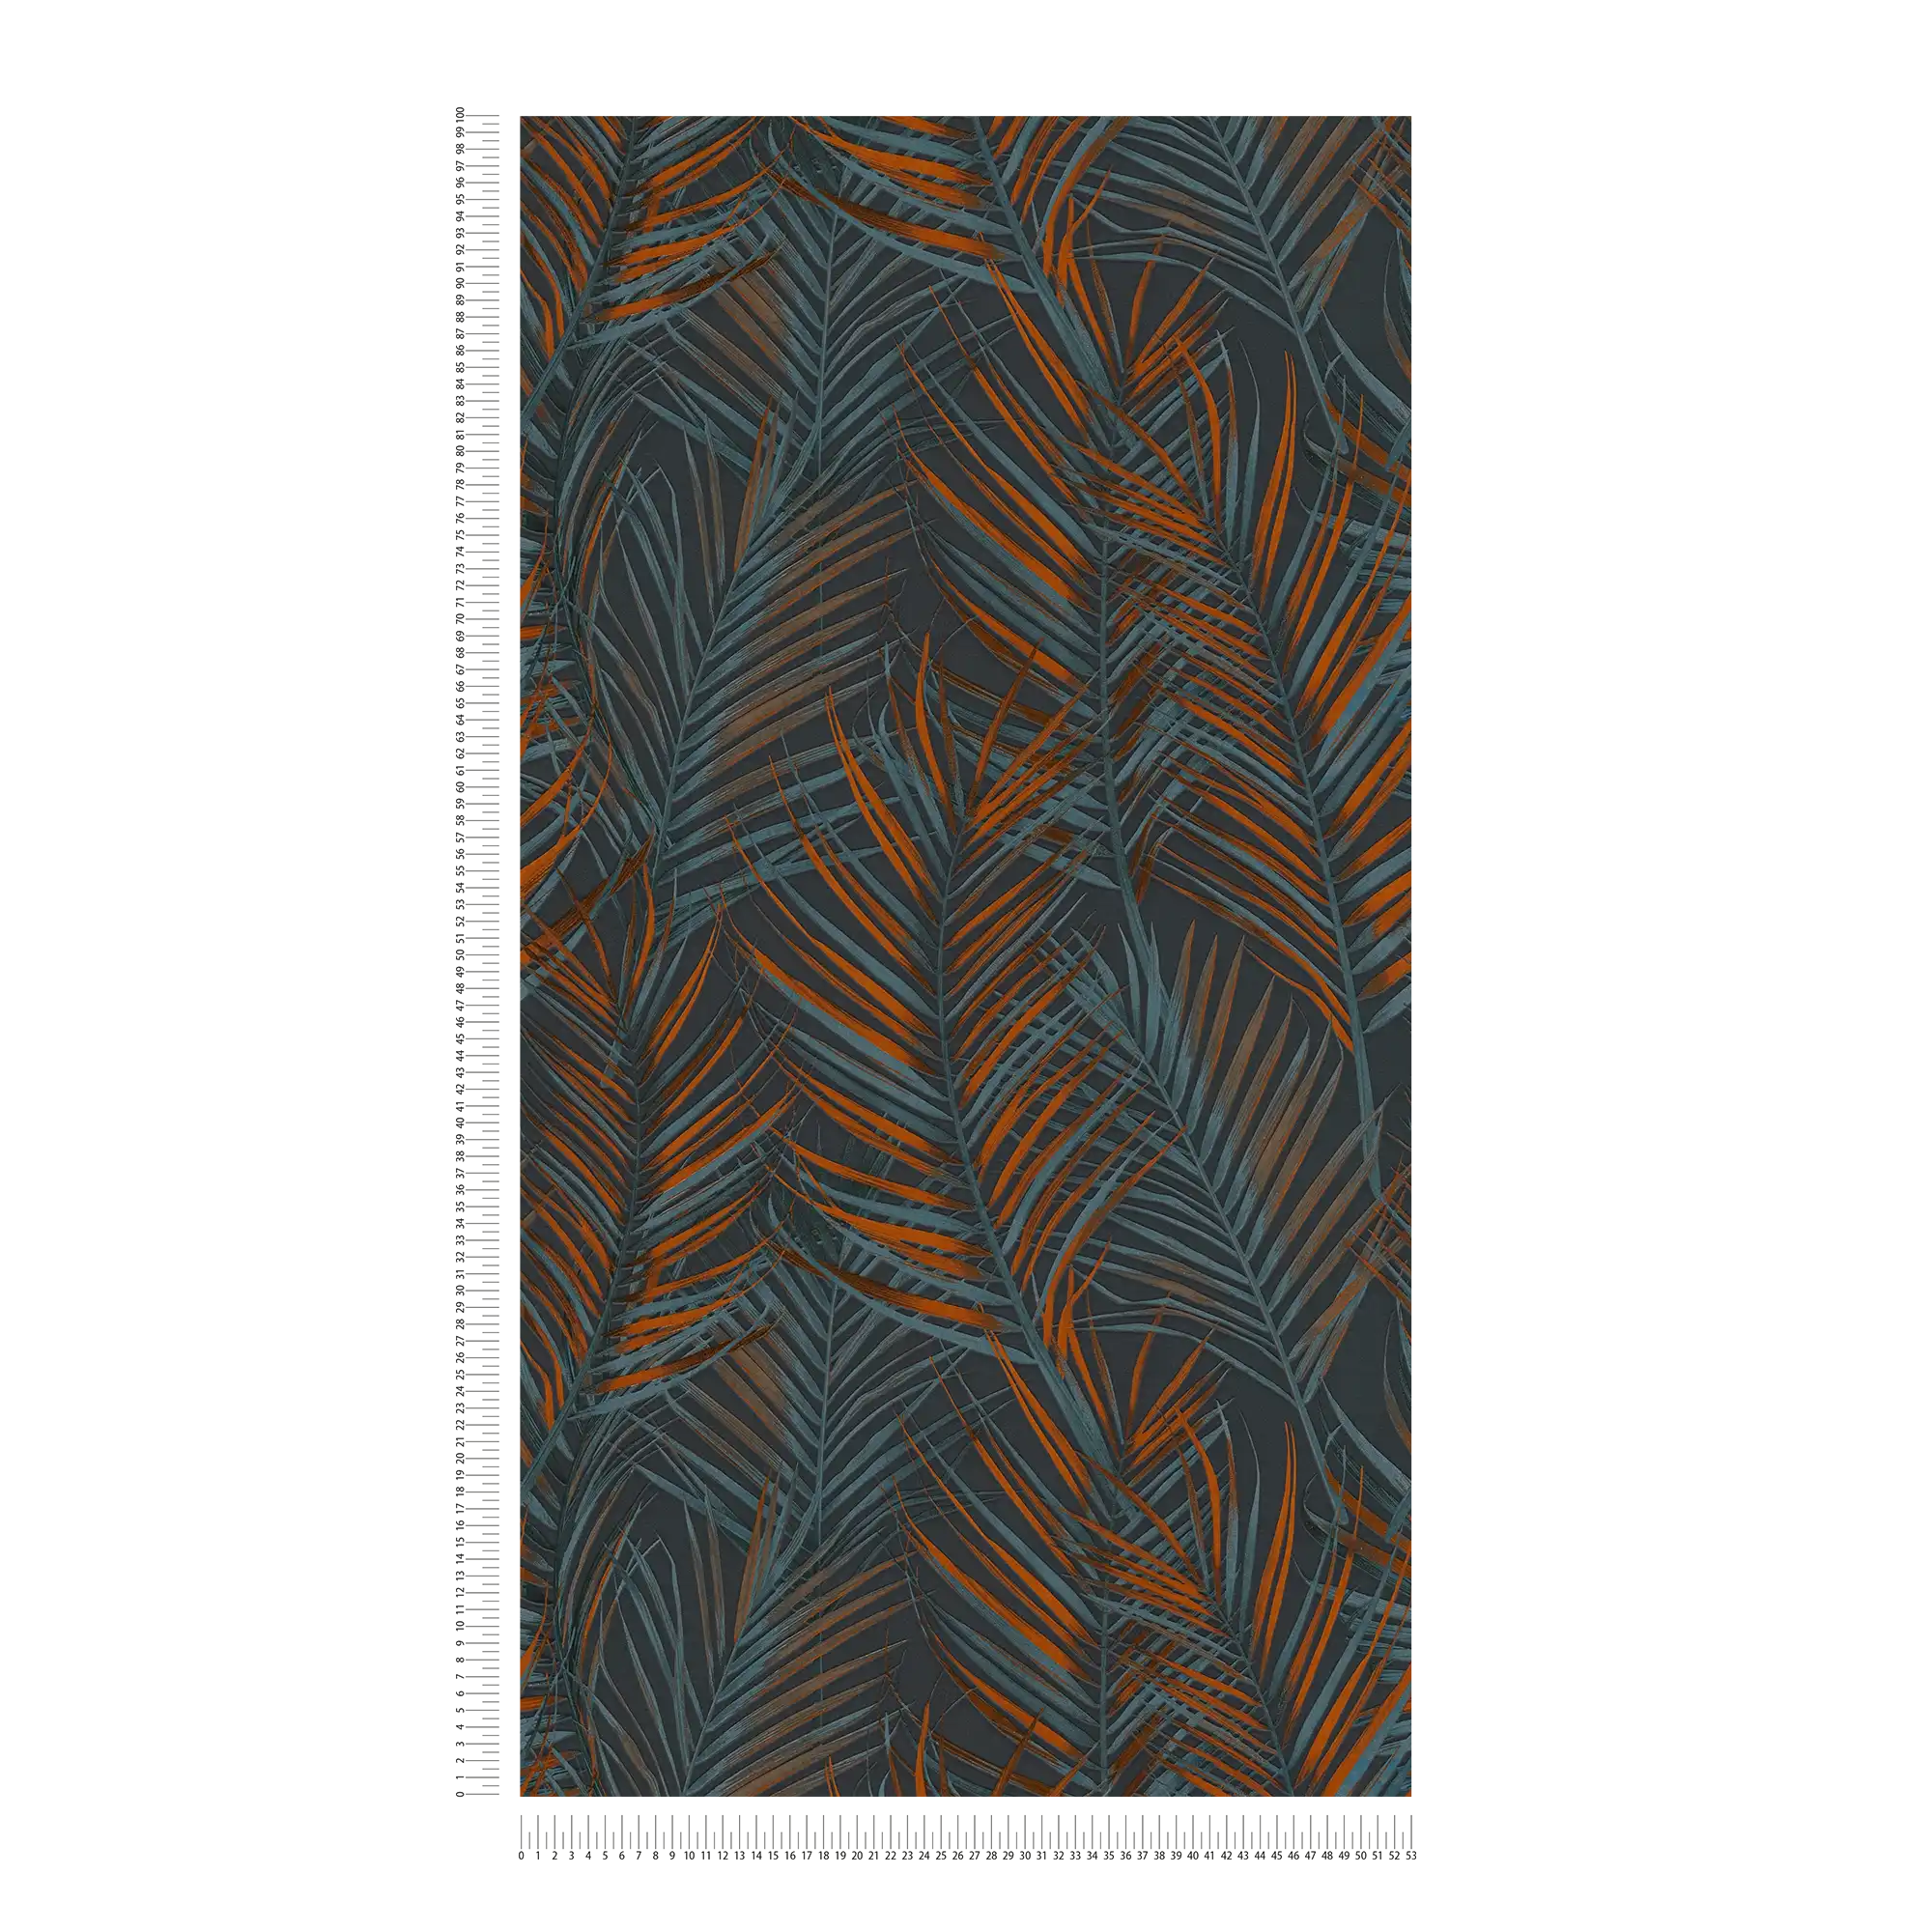             Jungle behang met palmbladeren in mat - zwart, oranje, petrol
        